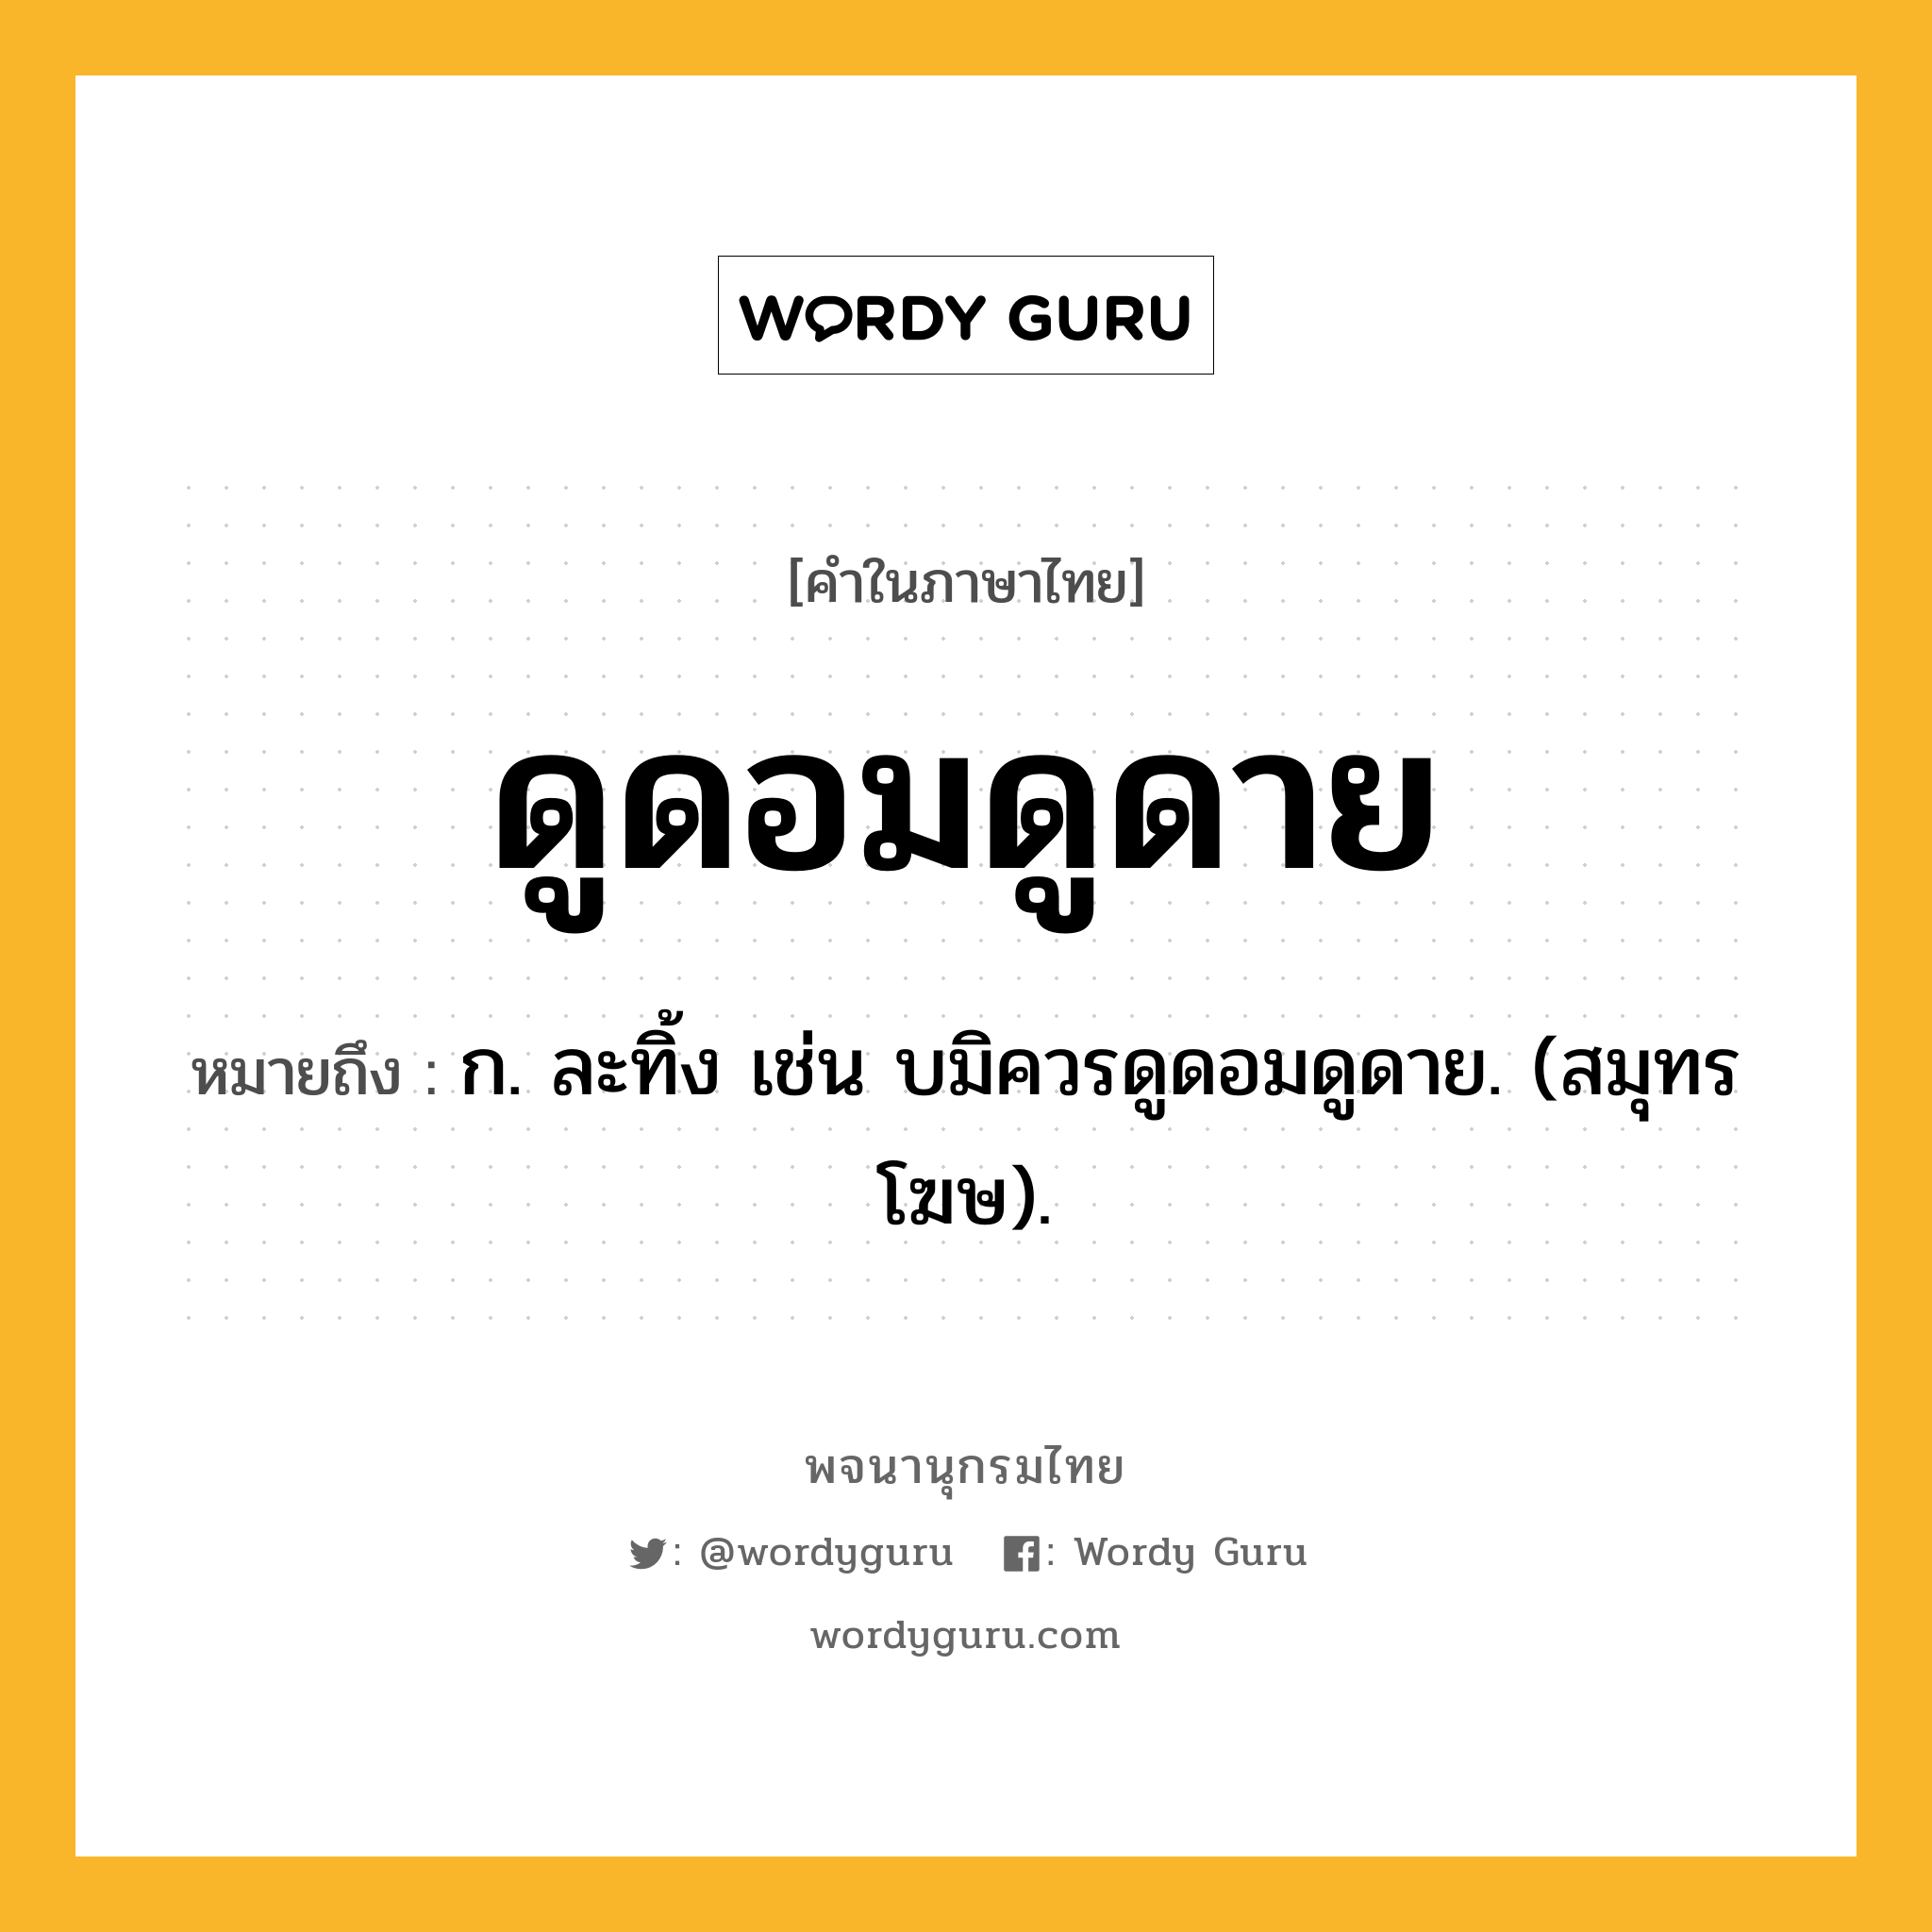 ดูดอมดูดาย หมายถึงอะไร?, คำในภาษาไทย ดูดอมดูดาย หมายถึง ก. ละทิ้ง เช่น บมิควรดูดอมดูดาย. (สมุทรโฆษ).